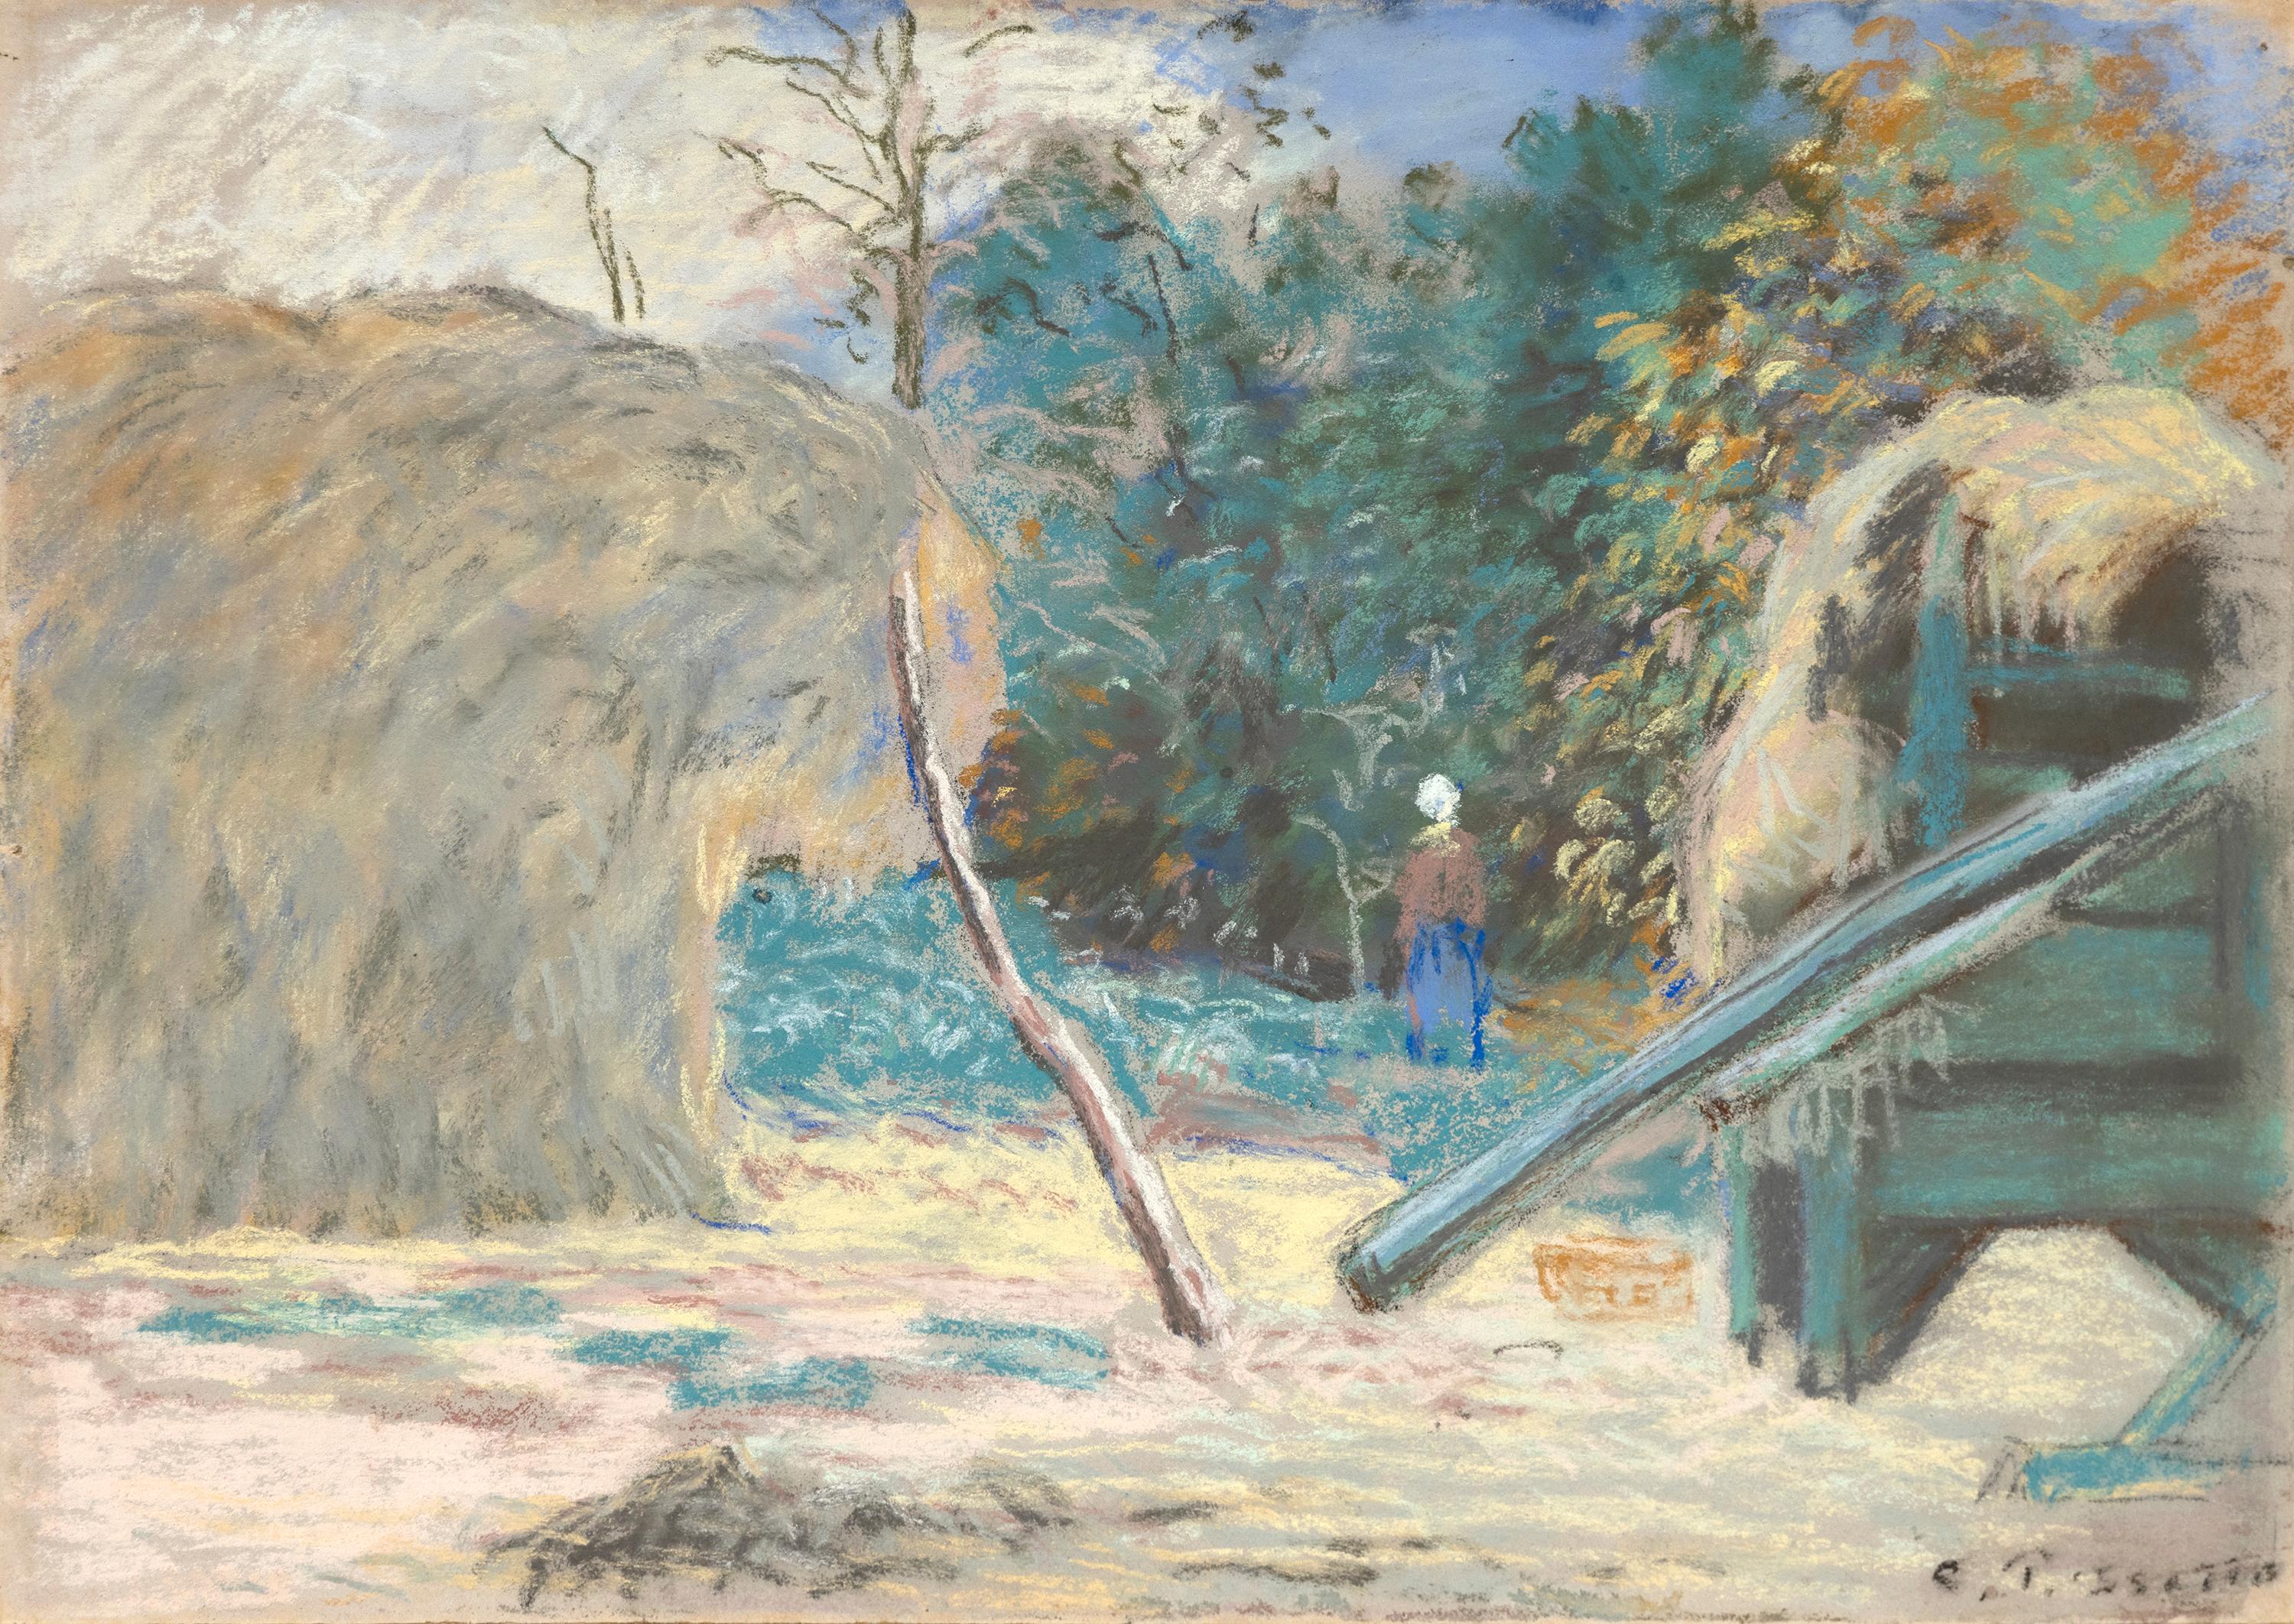 Paysage avec batteuse a Montfoucault - Art by Camille Pissarro